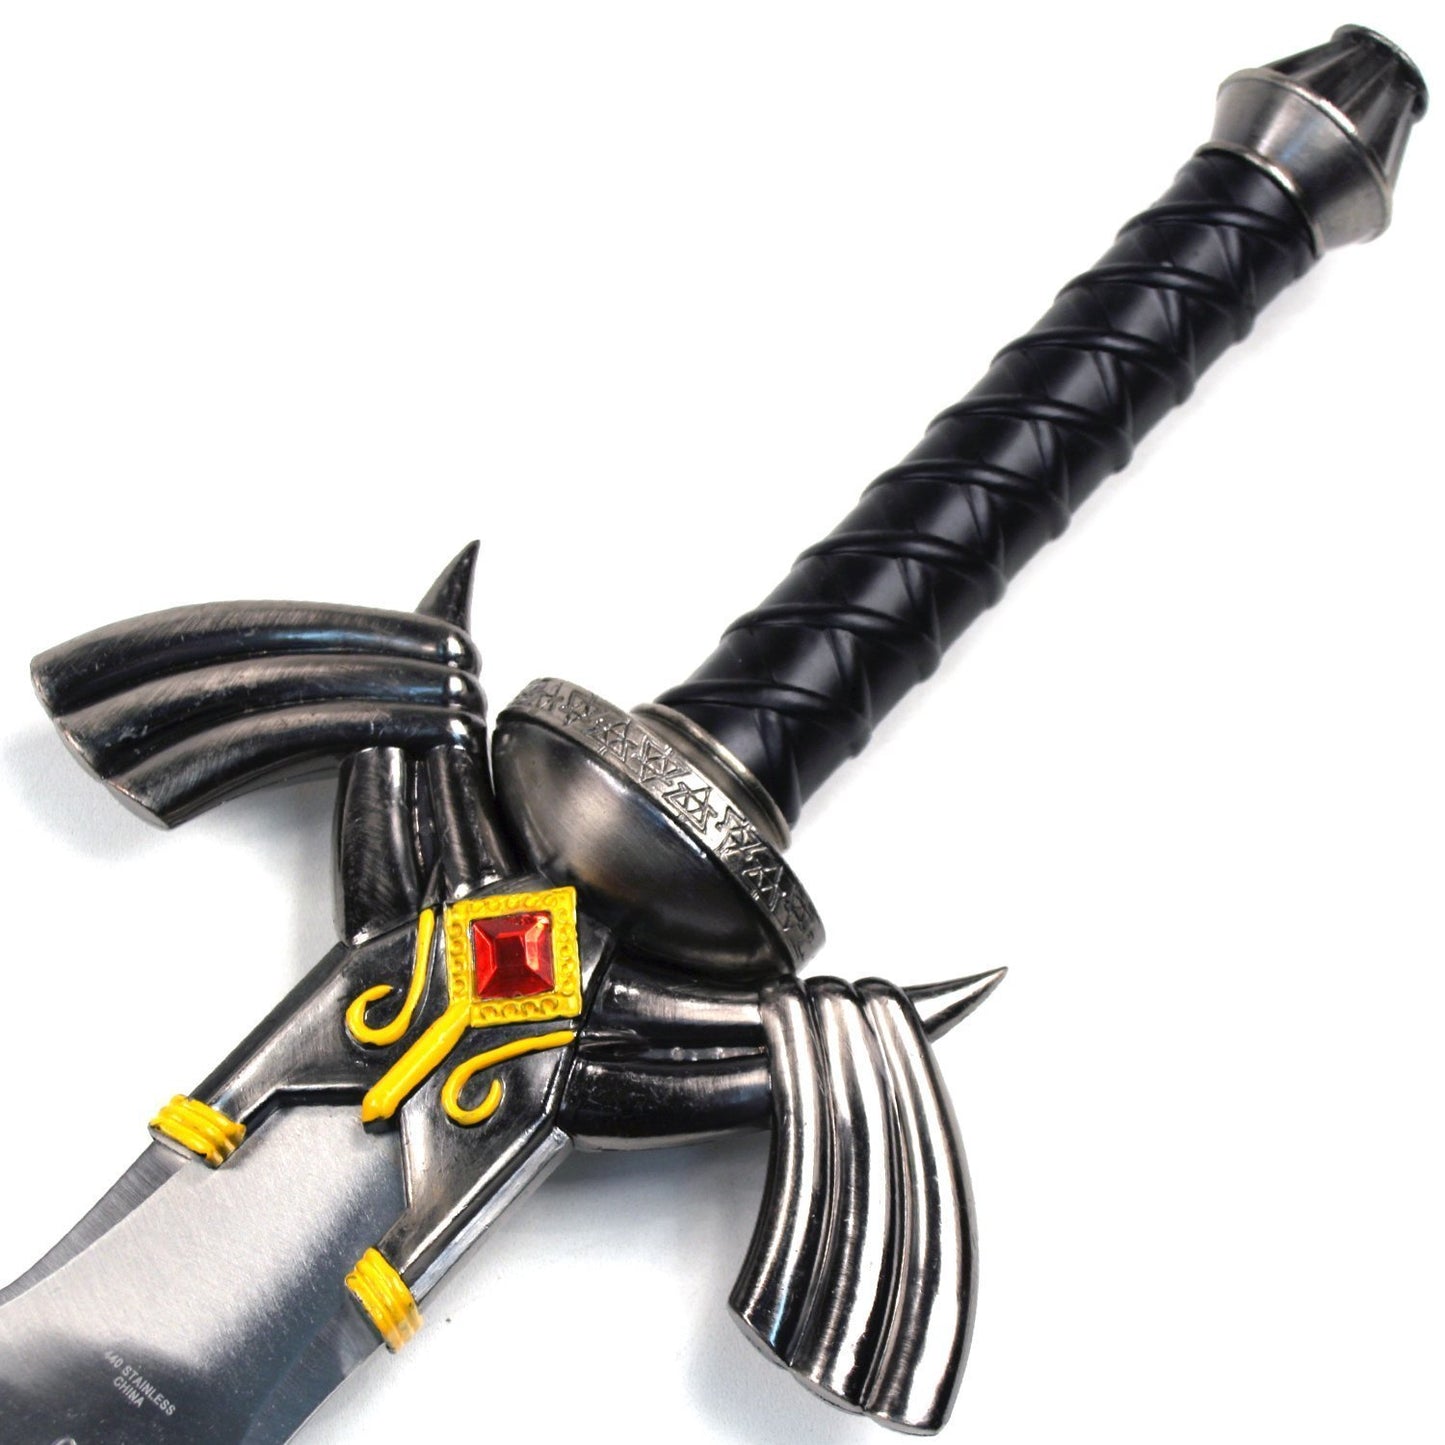 37.5 inch black zelda sword with plaque L-26137-BK